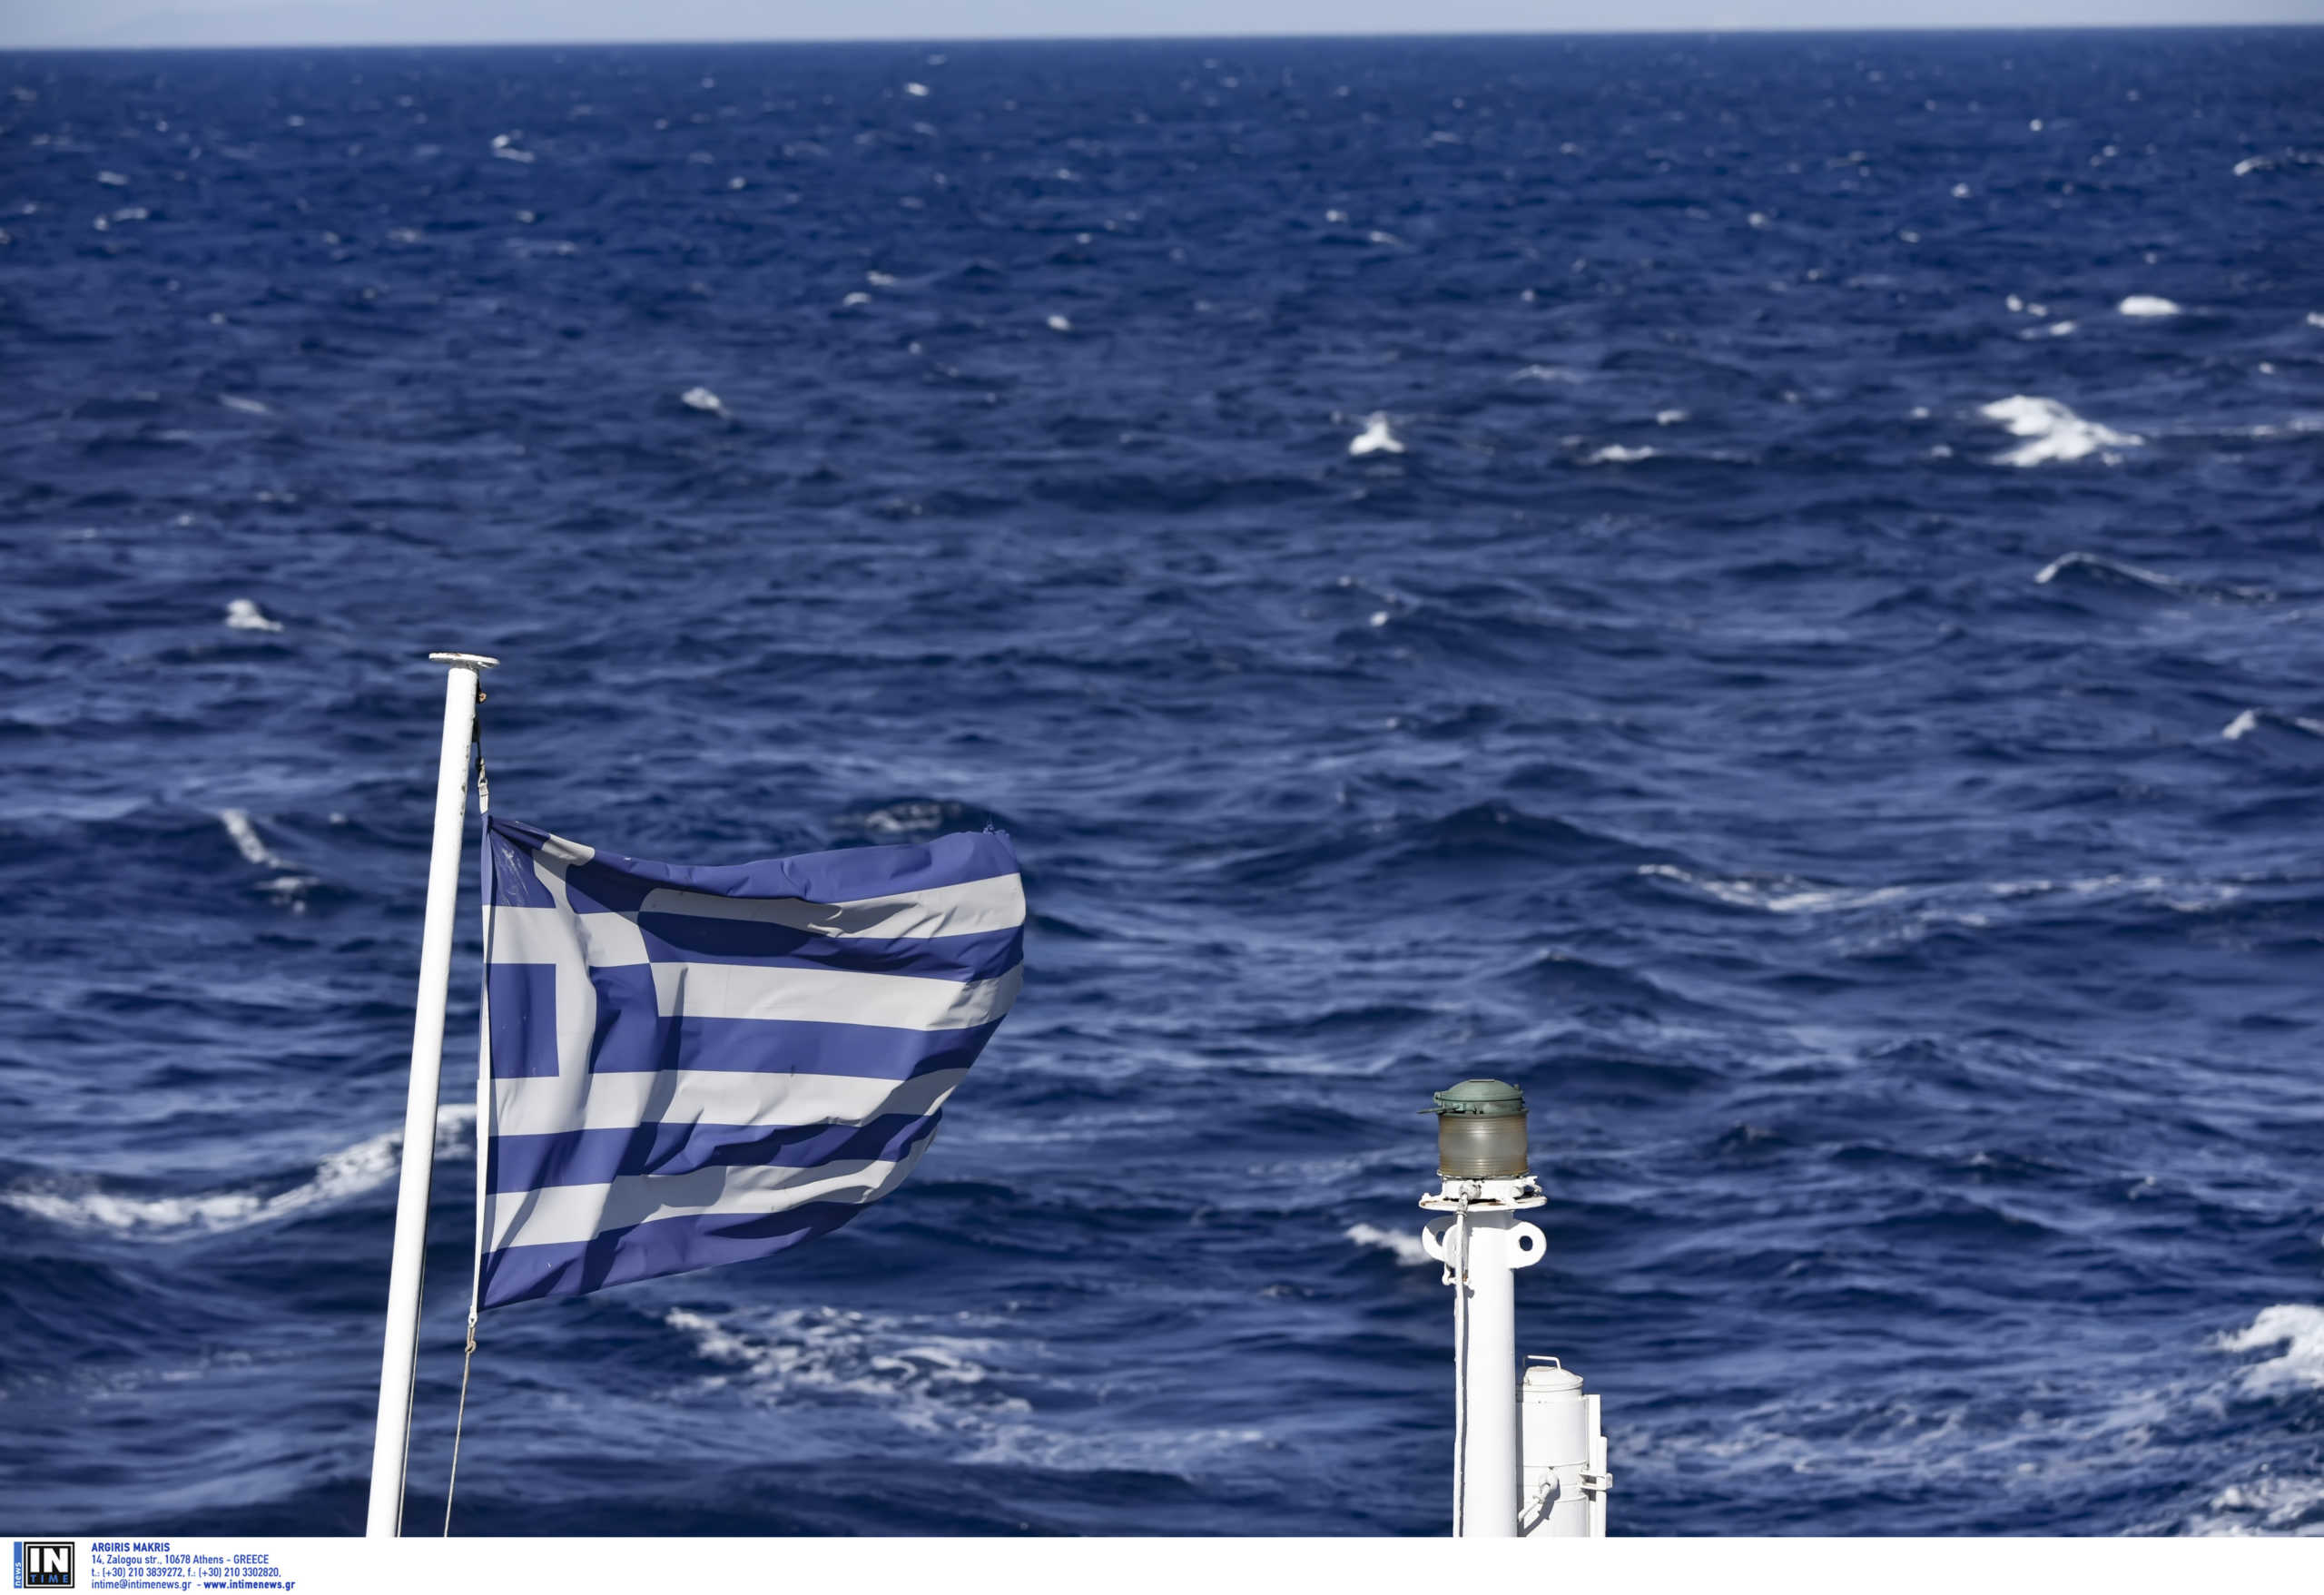 Καιρός αύριο: Ζέστη και ισχυροί άνεμοι στην Αττική, συννεφιά στη Θεσσαλονίκη – Πού θα πέσουν καταιγίδες